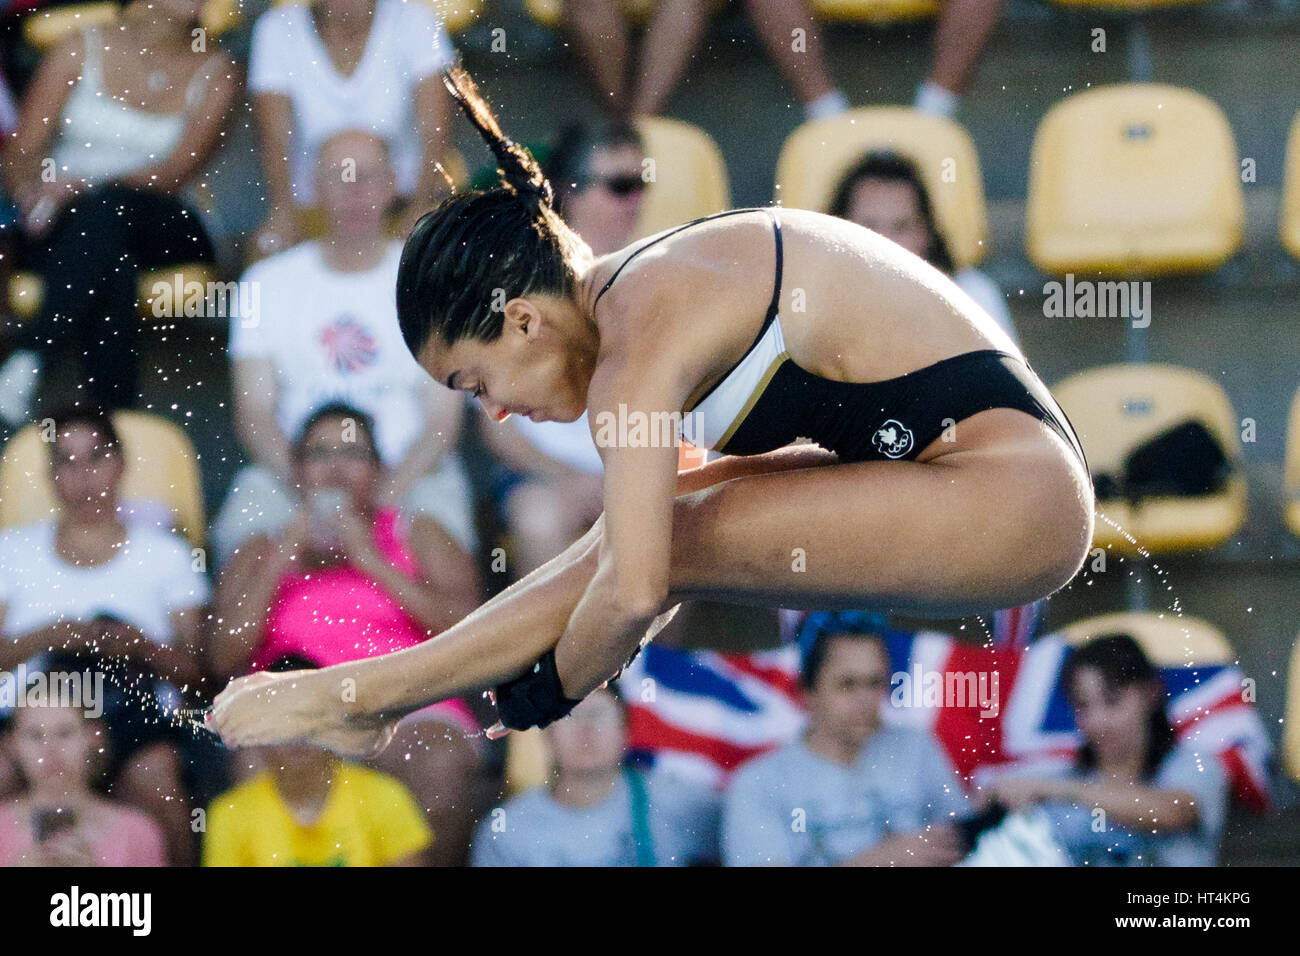 Rio de Janeiro, Brésil. 18 août 2016 Meaghan Benfeito (CAN) participe à la plate-forme de plongée femme 10m préliminaire à l'été 2016 Jeux Olympiques. Banque D'Images